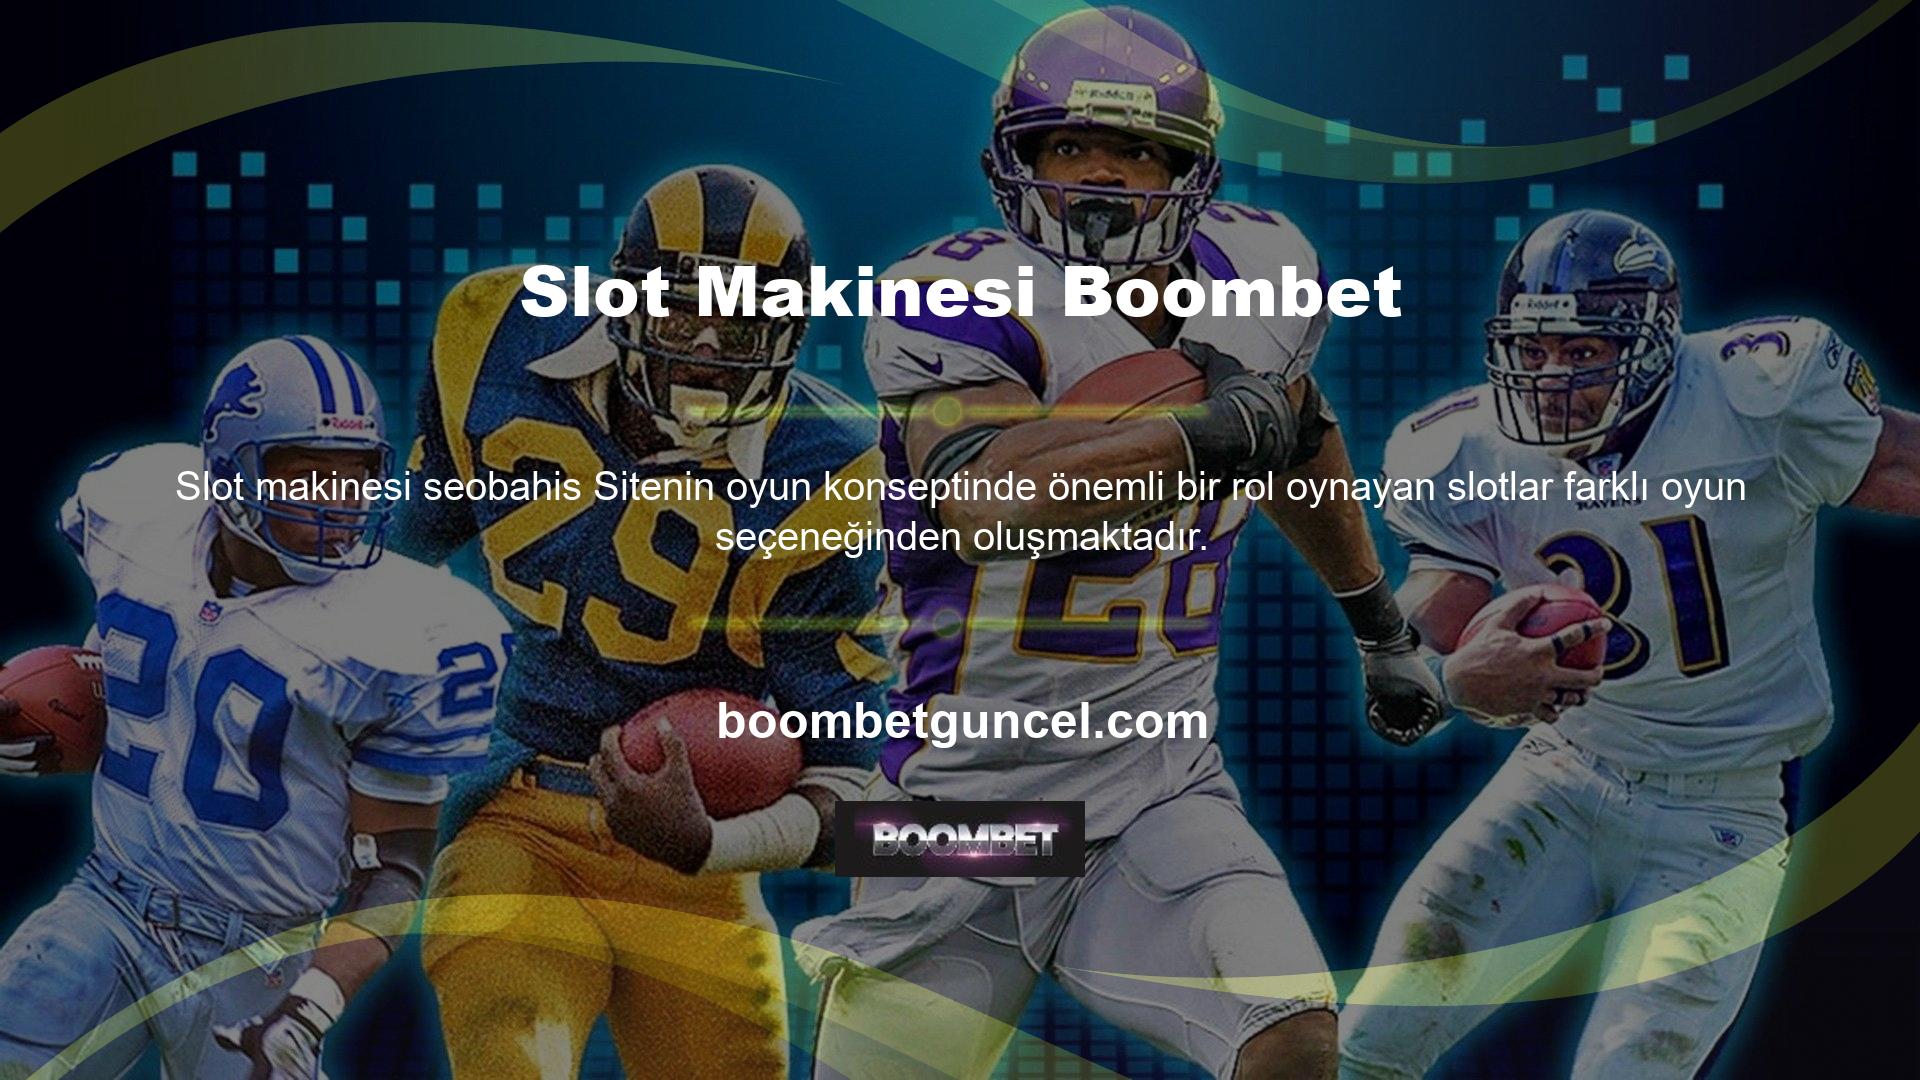 Boombet de aynı anlayışı slot gündemine taşıyarak slotları diğer yazılım şirketlerine karşı savunmuş ve kullanıcıları ekran üstü oyun mantığıyla tanıştırmıştır